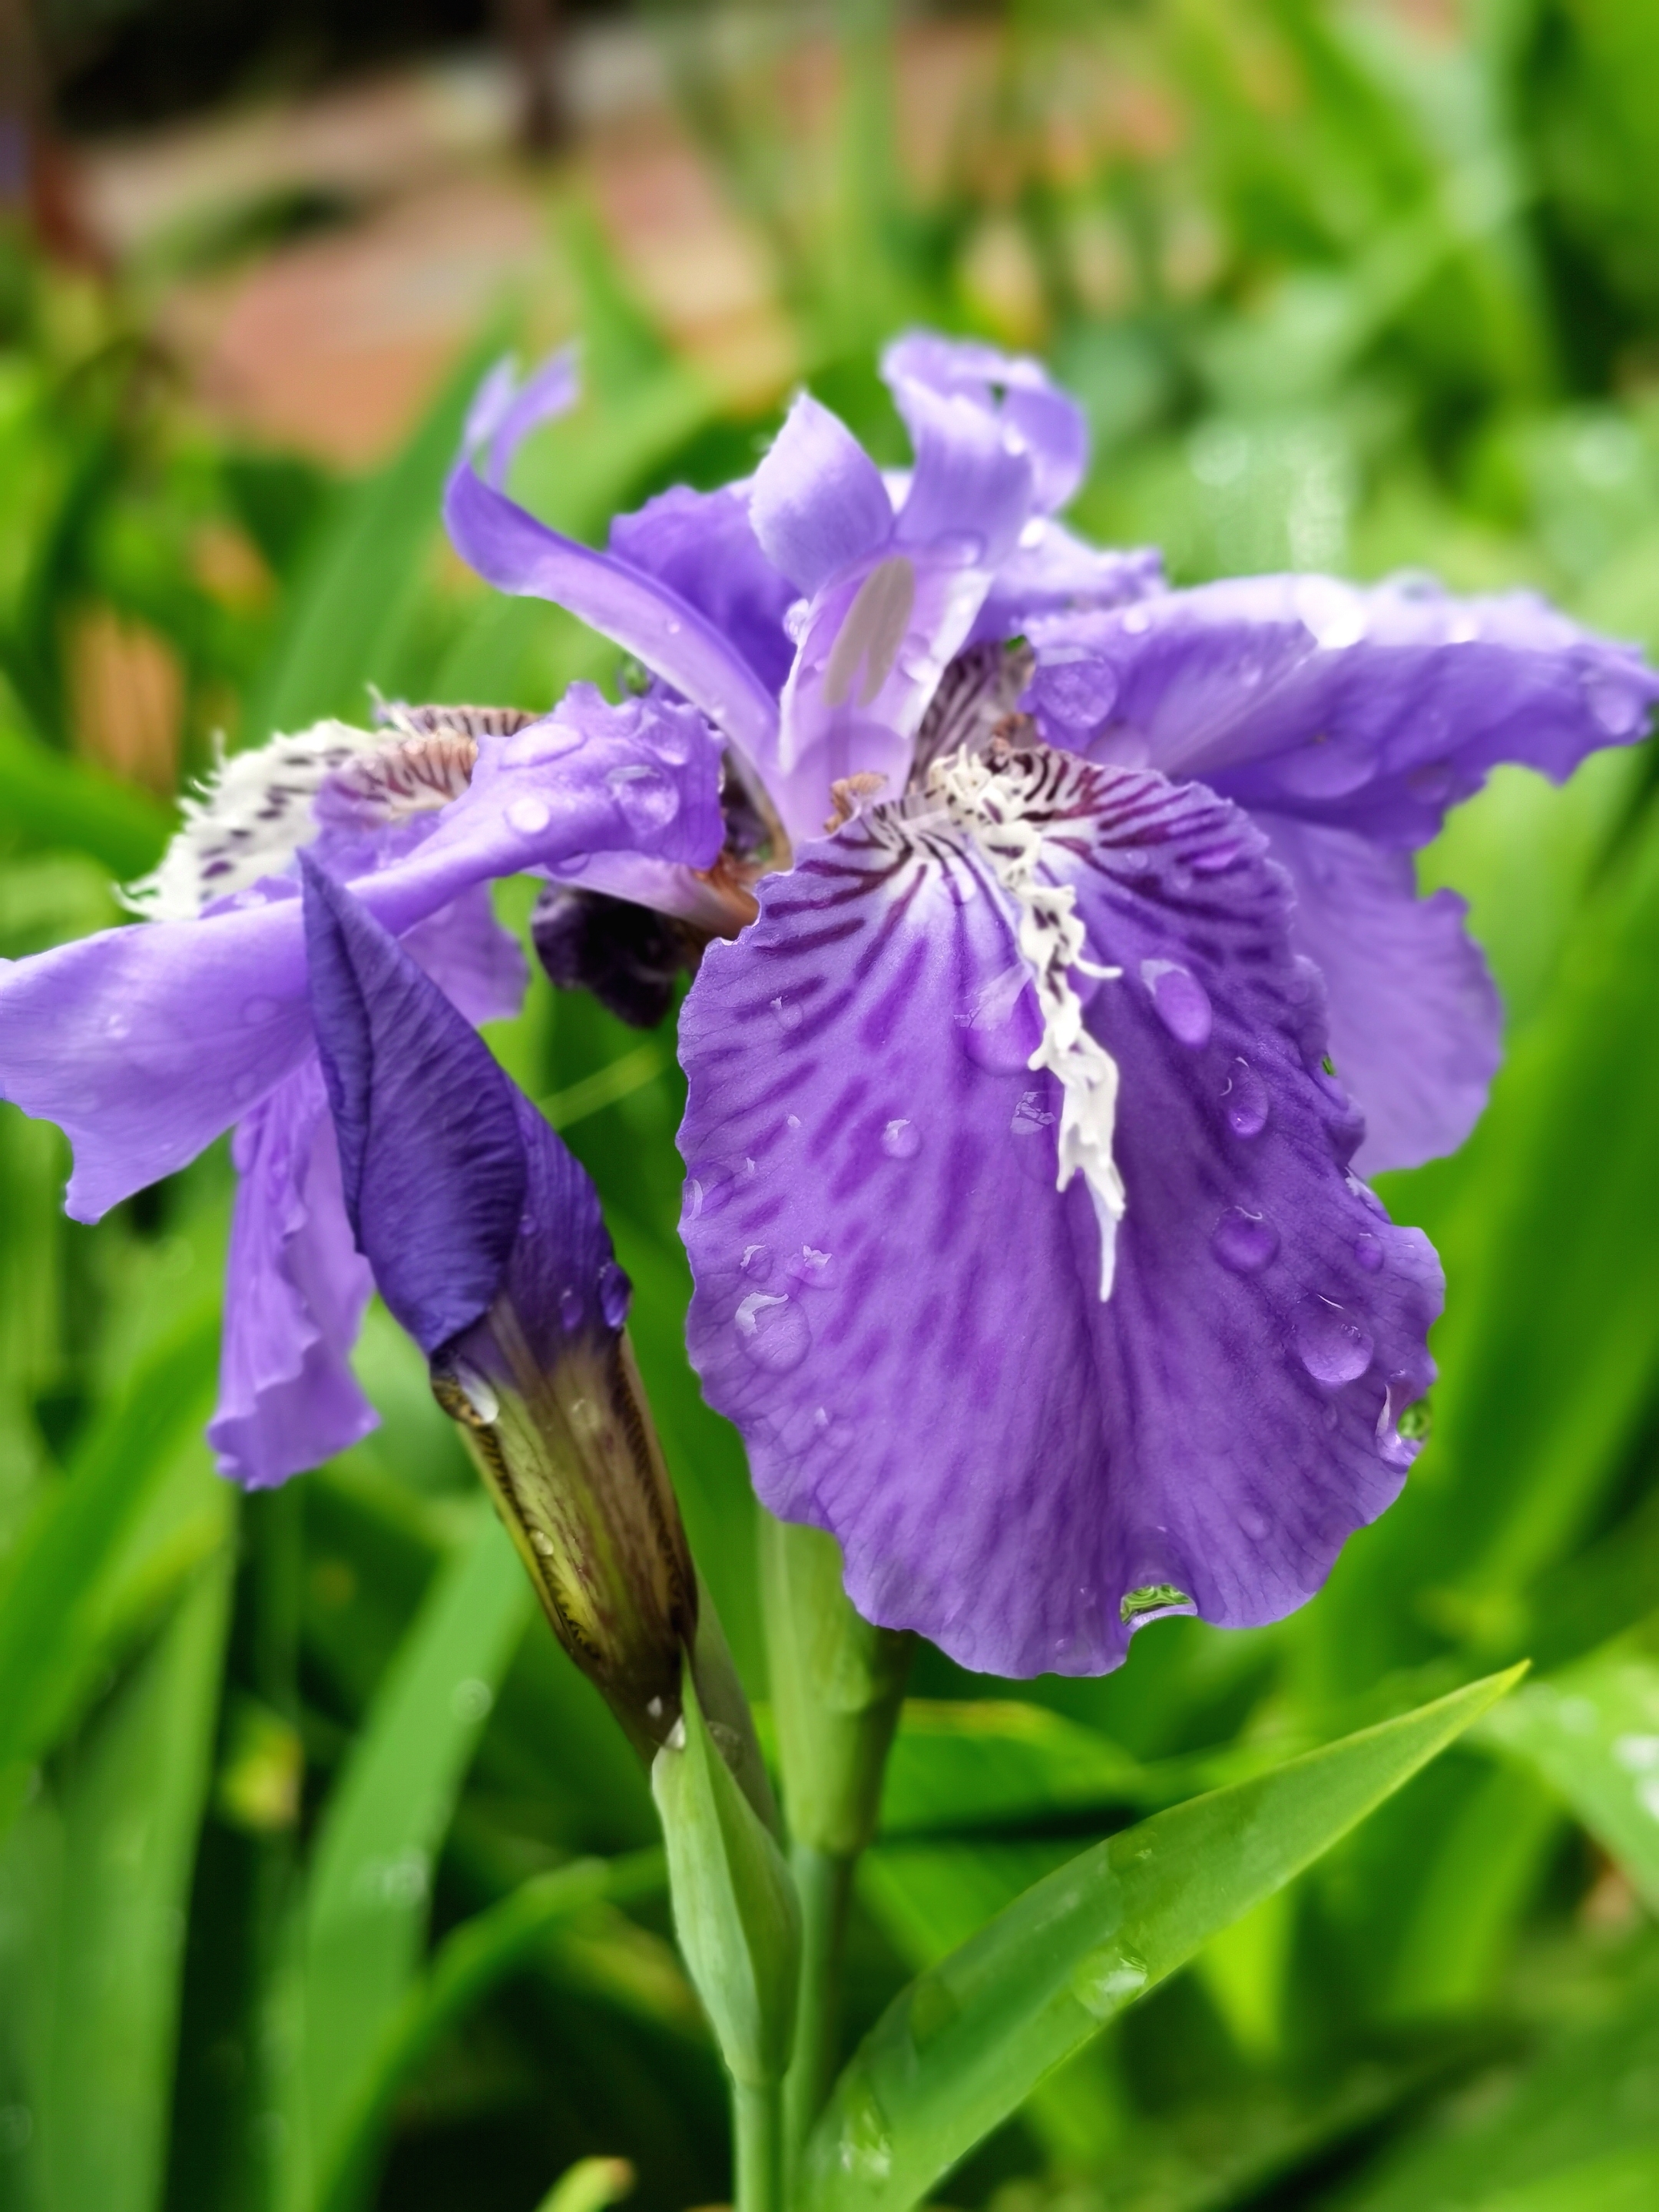 雨后的蓝紫色鸢尾花,娇艳欲滴,如梦如幻.